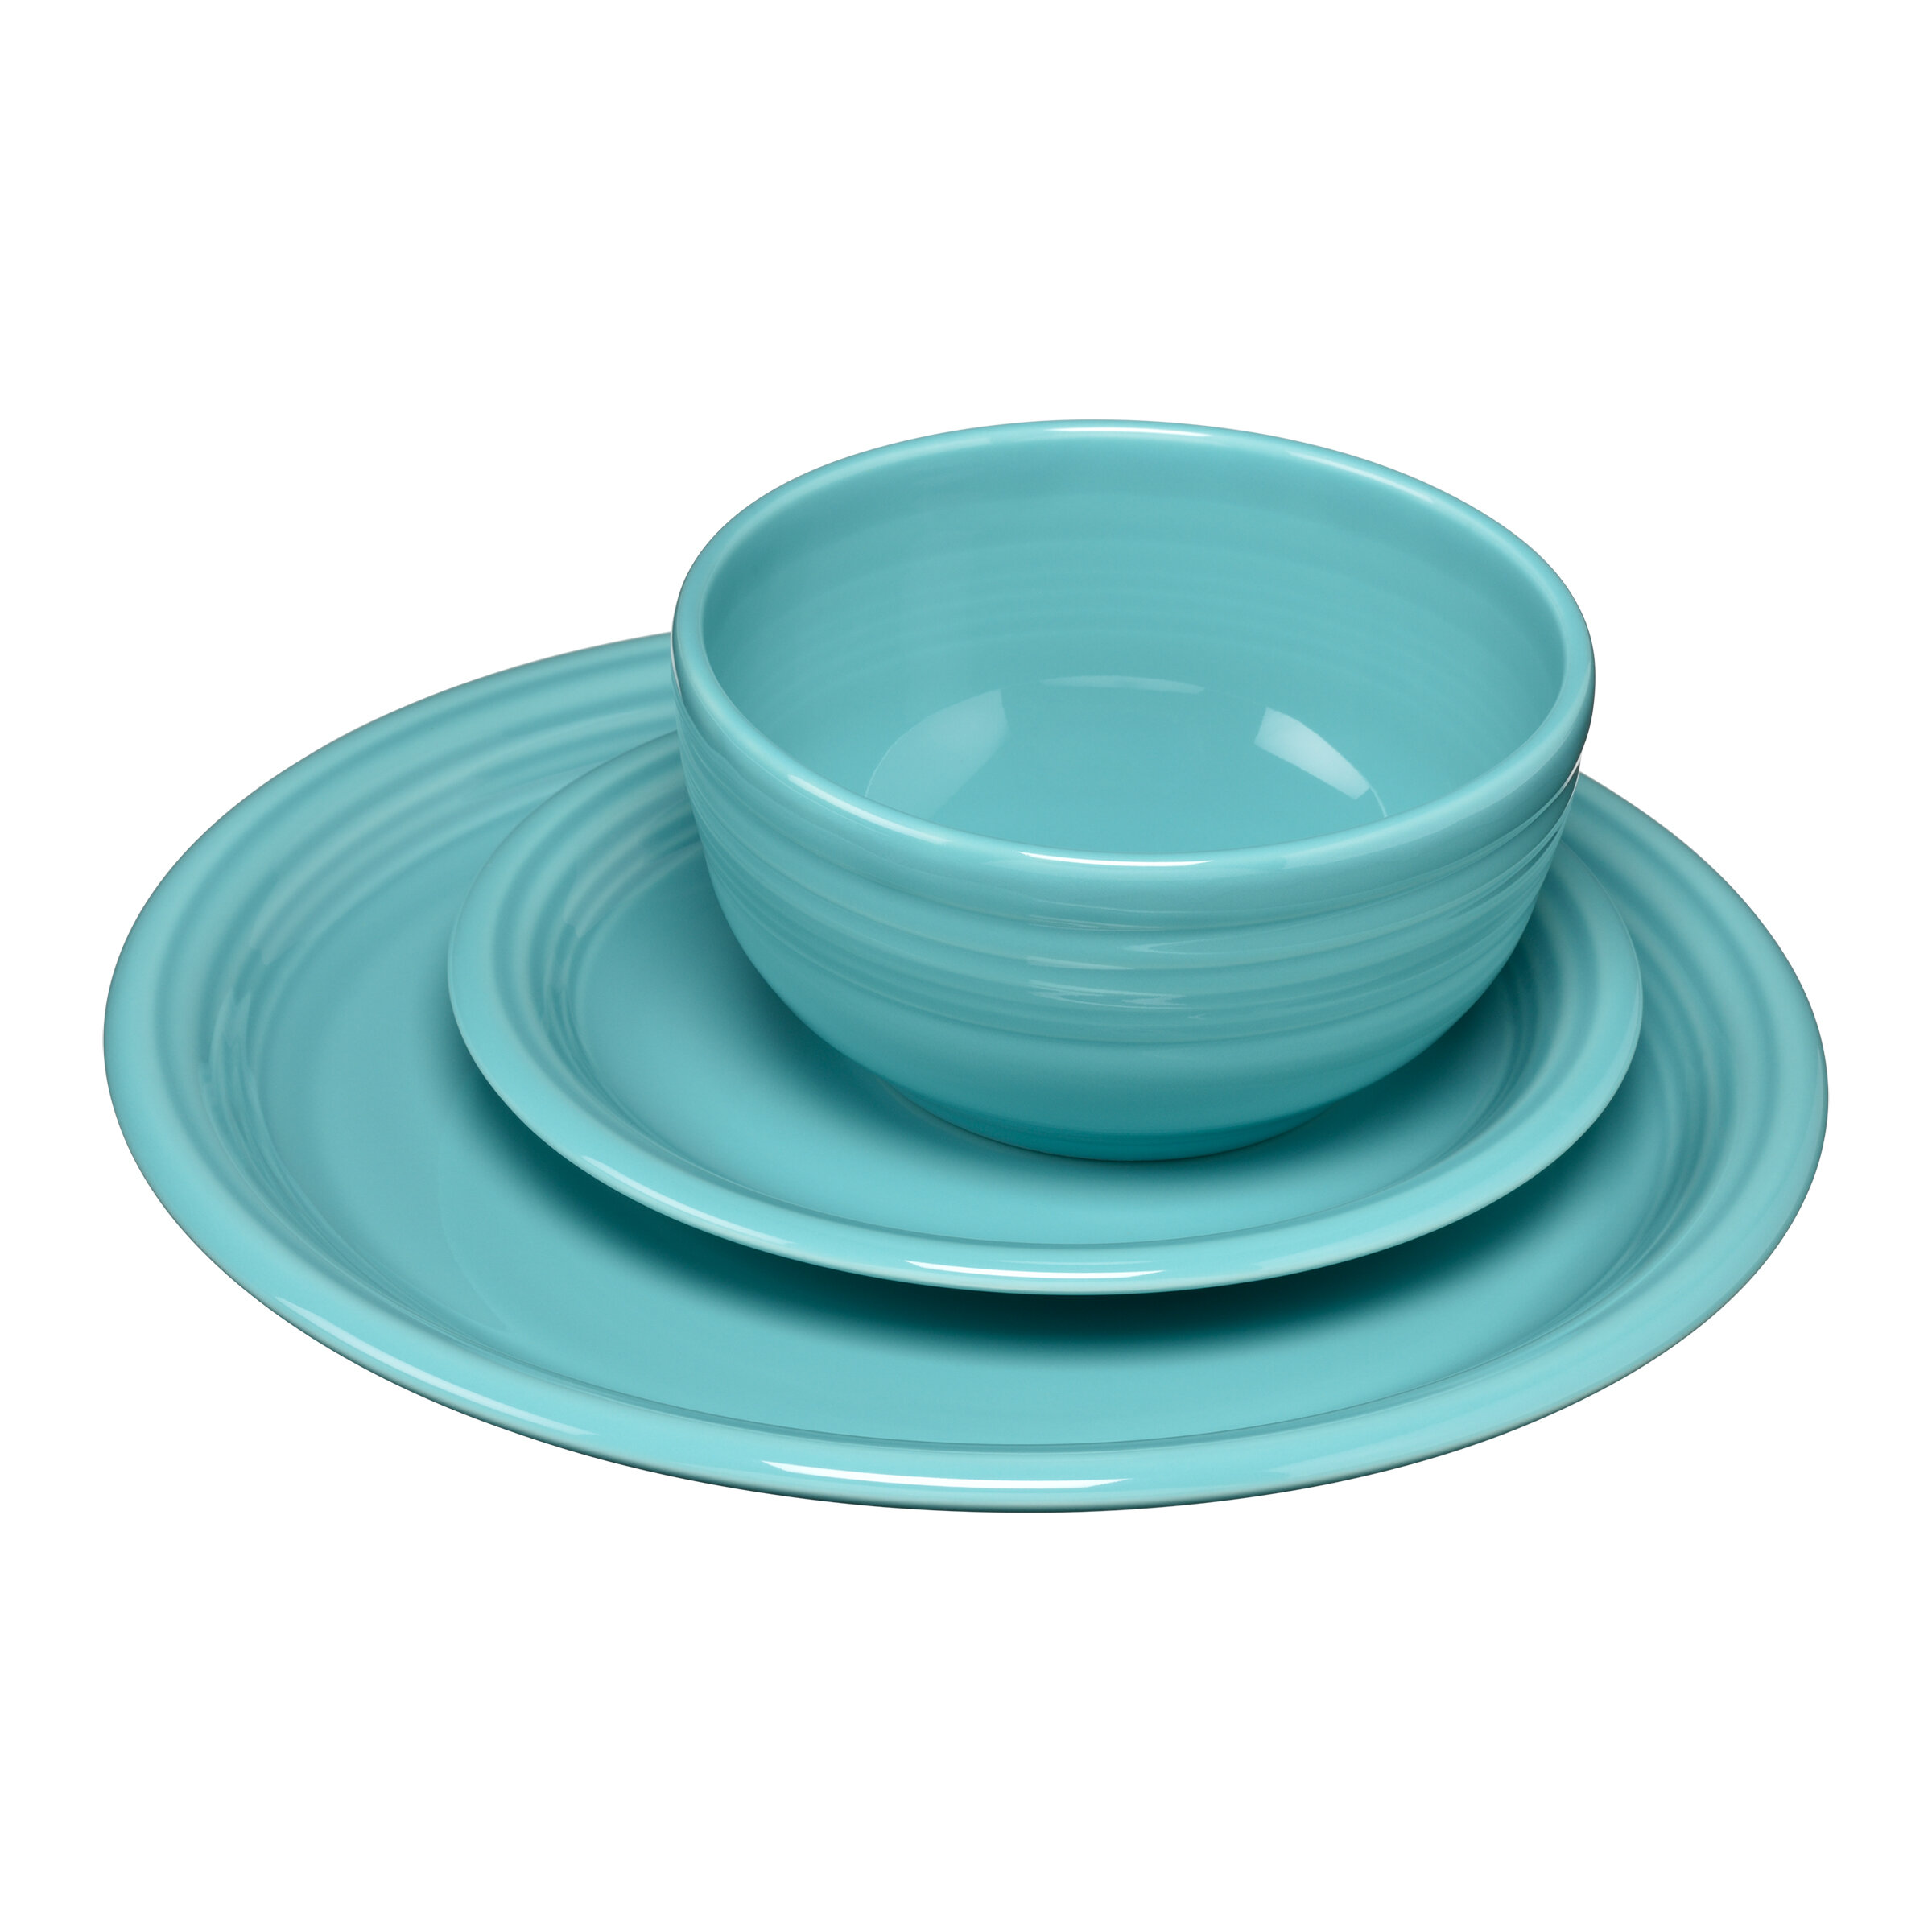 Mainstays - Dark Blue Round Plastic Plate, 10.5 inch